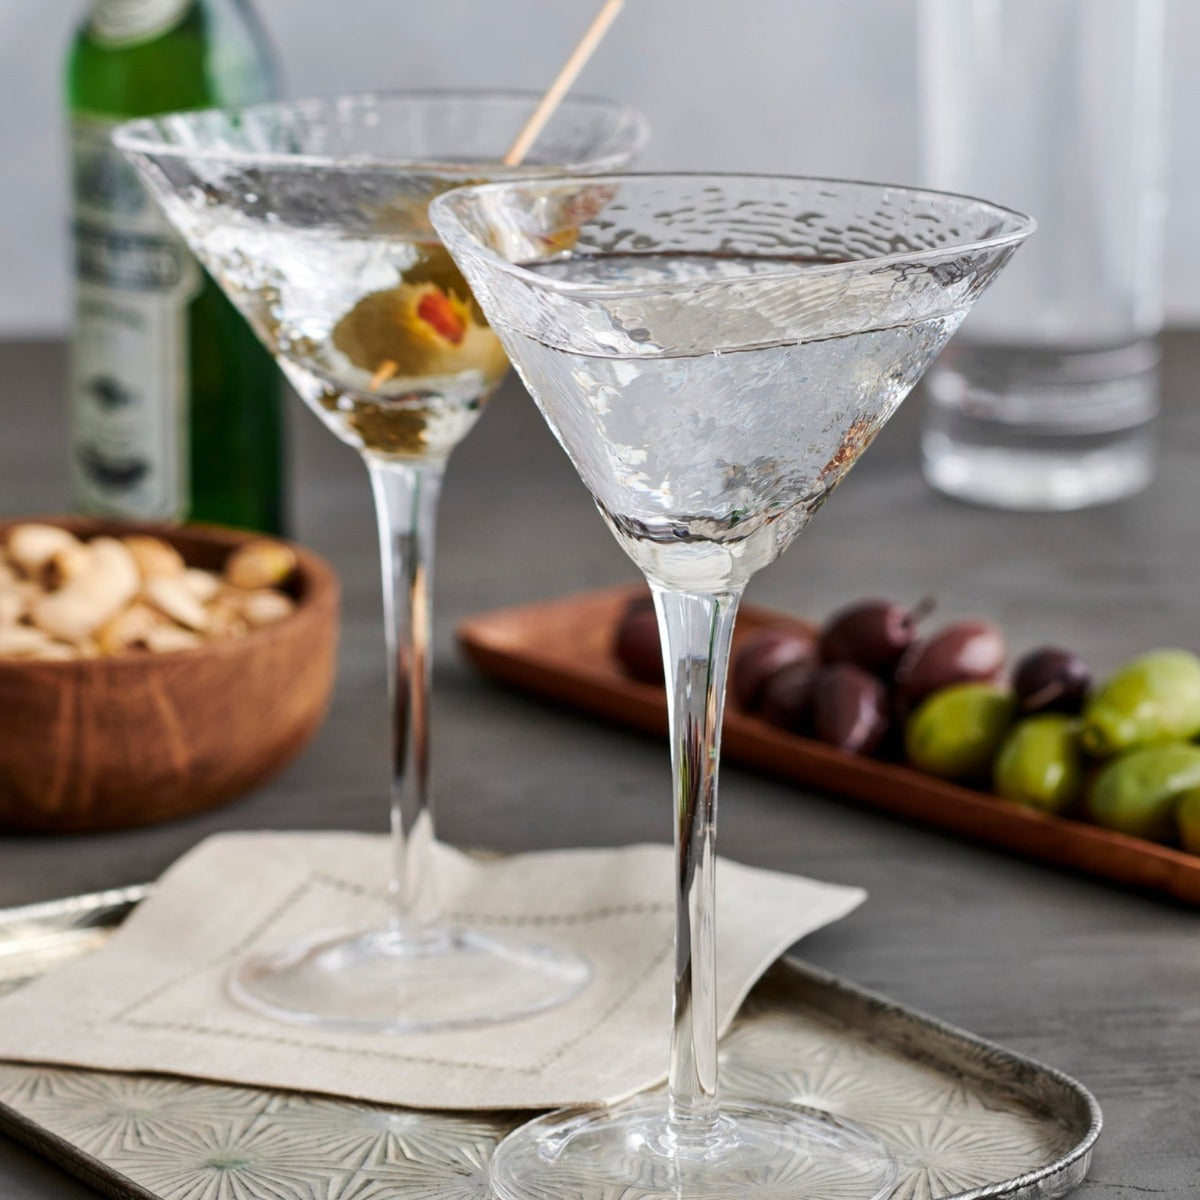  Unique Martini Glasses, Set of 4